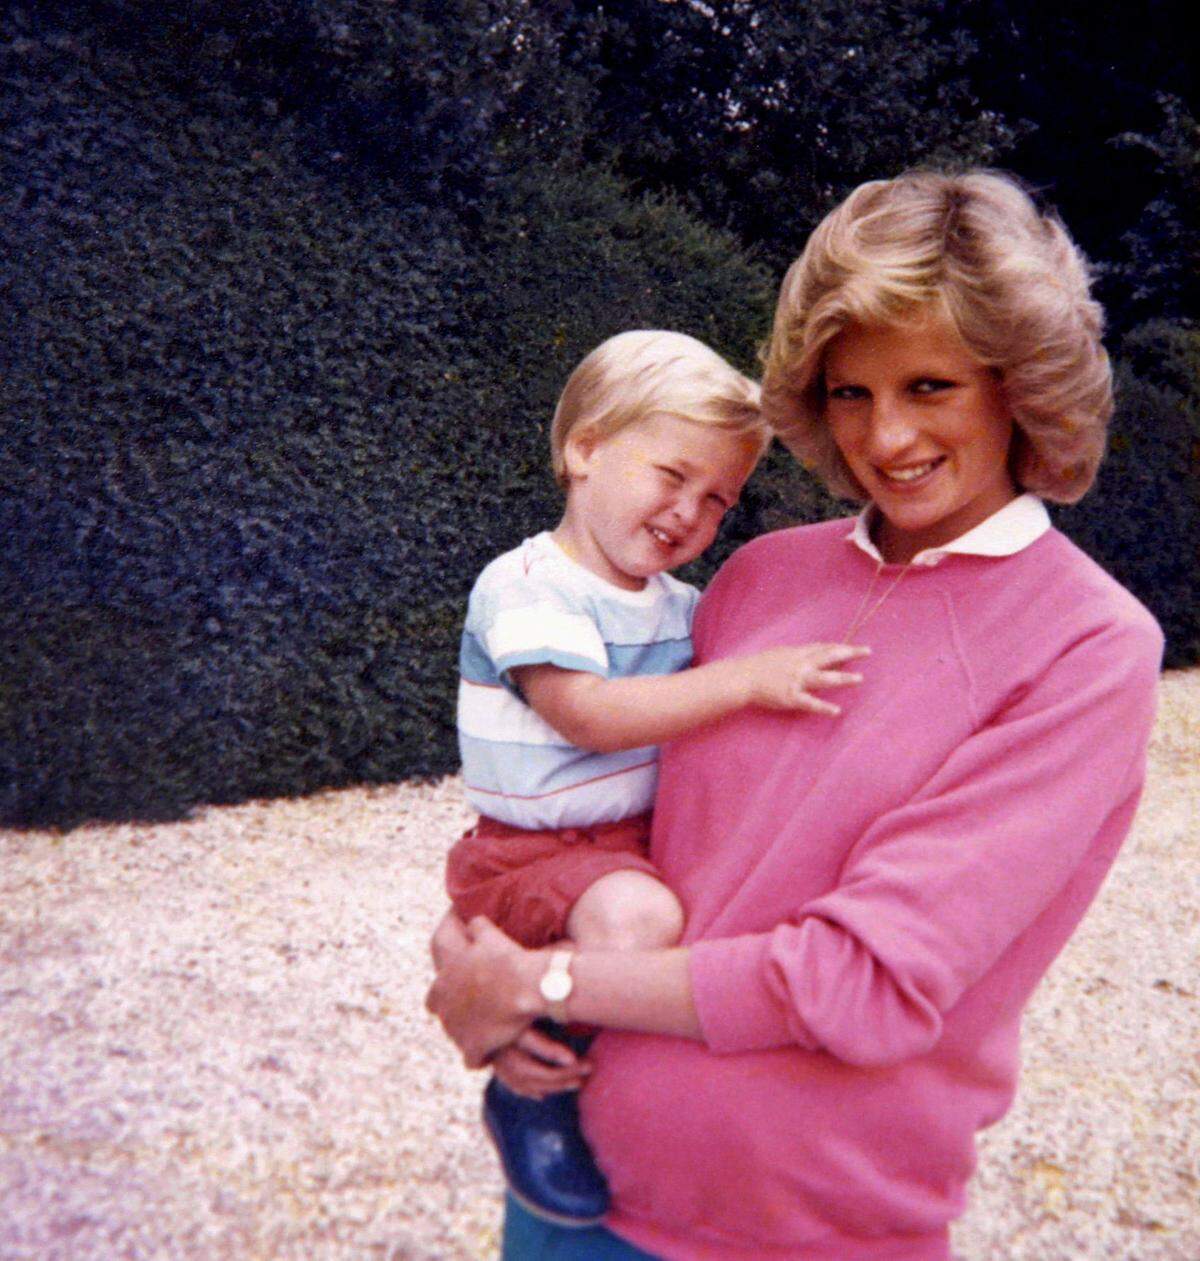 Das letzte Gespräch zwischen Prinzessin Diana und ihren Söhnen war ein "hastiges" Telefonat - das berichten die Prinzen William (35) und Harry (32) in einer TV-Dokumentation anlässlich des 20. Todestags ihrer Mutter. An den Inhalt des Gesprächs könne er sich nicht erinnern, sagt Harry. "Alles was ich noch weiß, ist dass ich für den Rest meines Lebens bereuen werde, wie kurz der Anruf war."